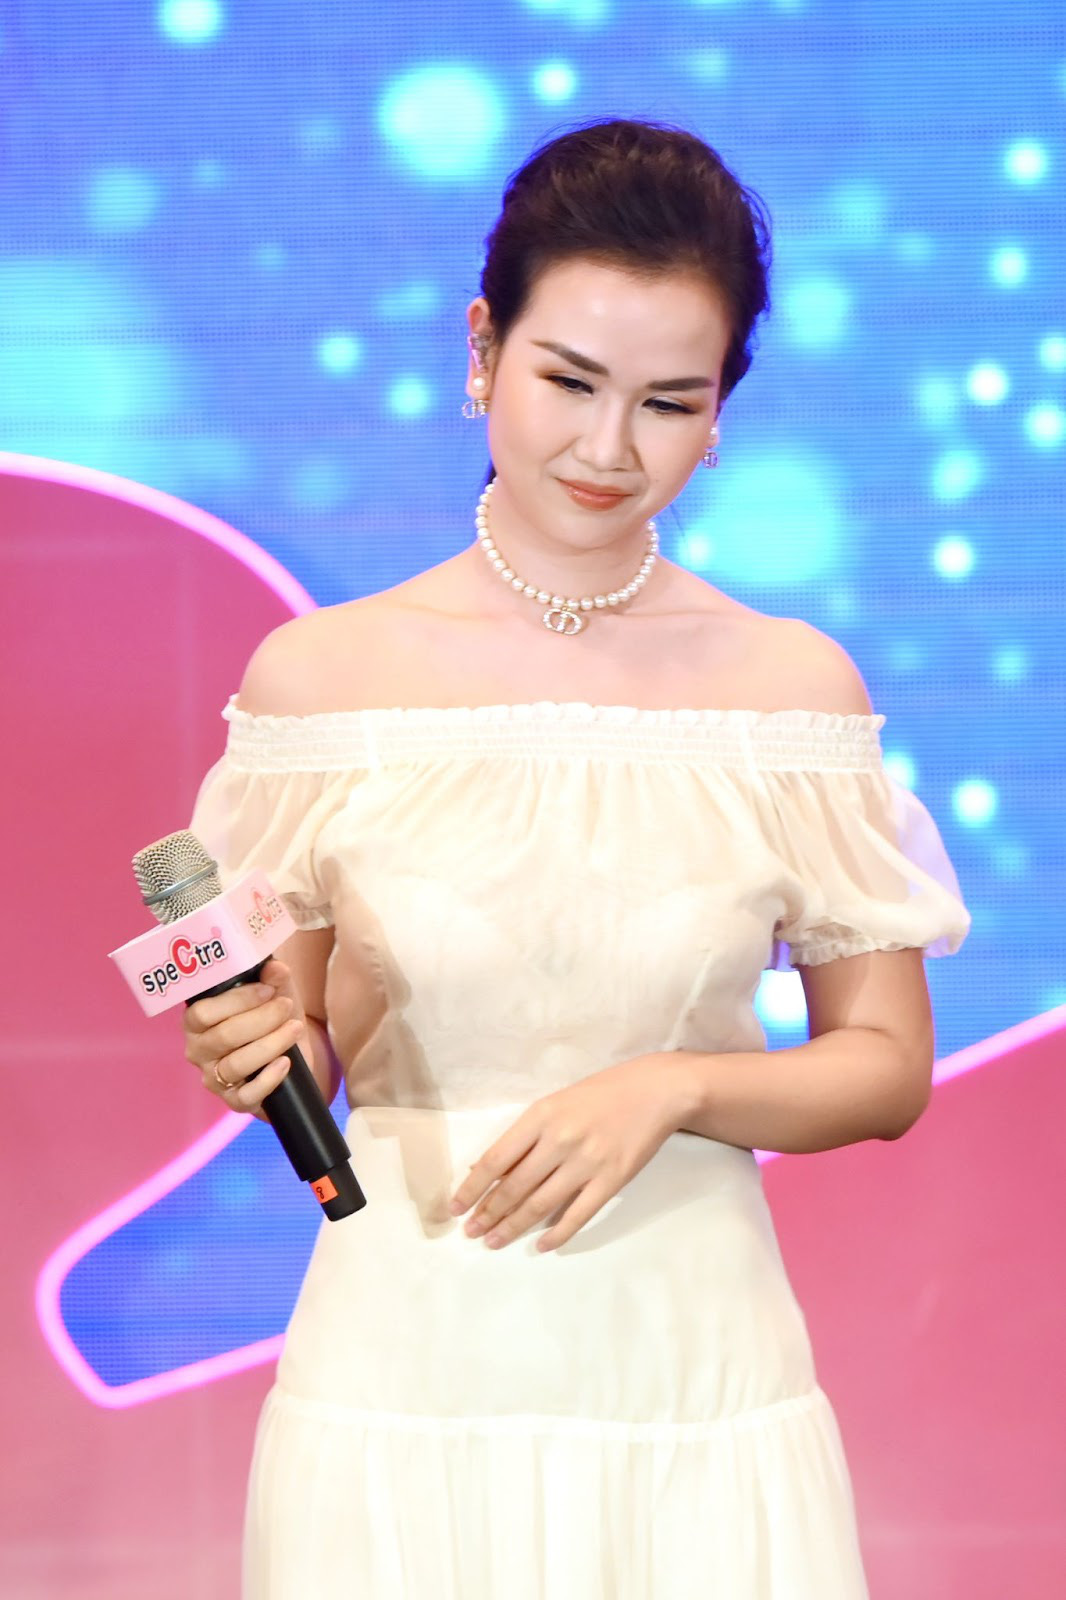 Spectra Việt Nam chính thức giới thiệu bài hát “Câu chuyện của mẹ” dành tặng cho các mẹ bỉm sữa nhân dịp xuân Nhâm Dần 2022 - Ảnh 4.